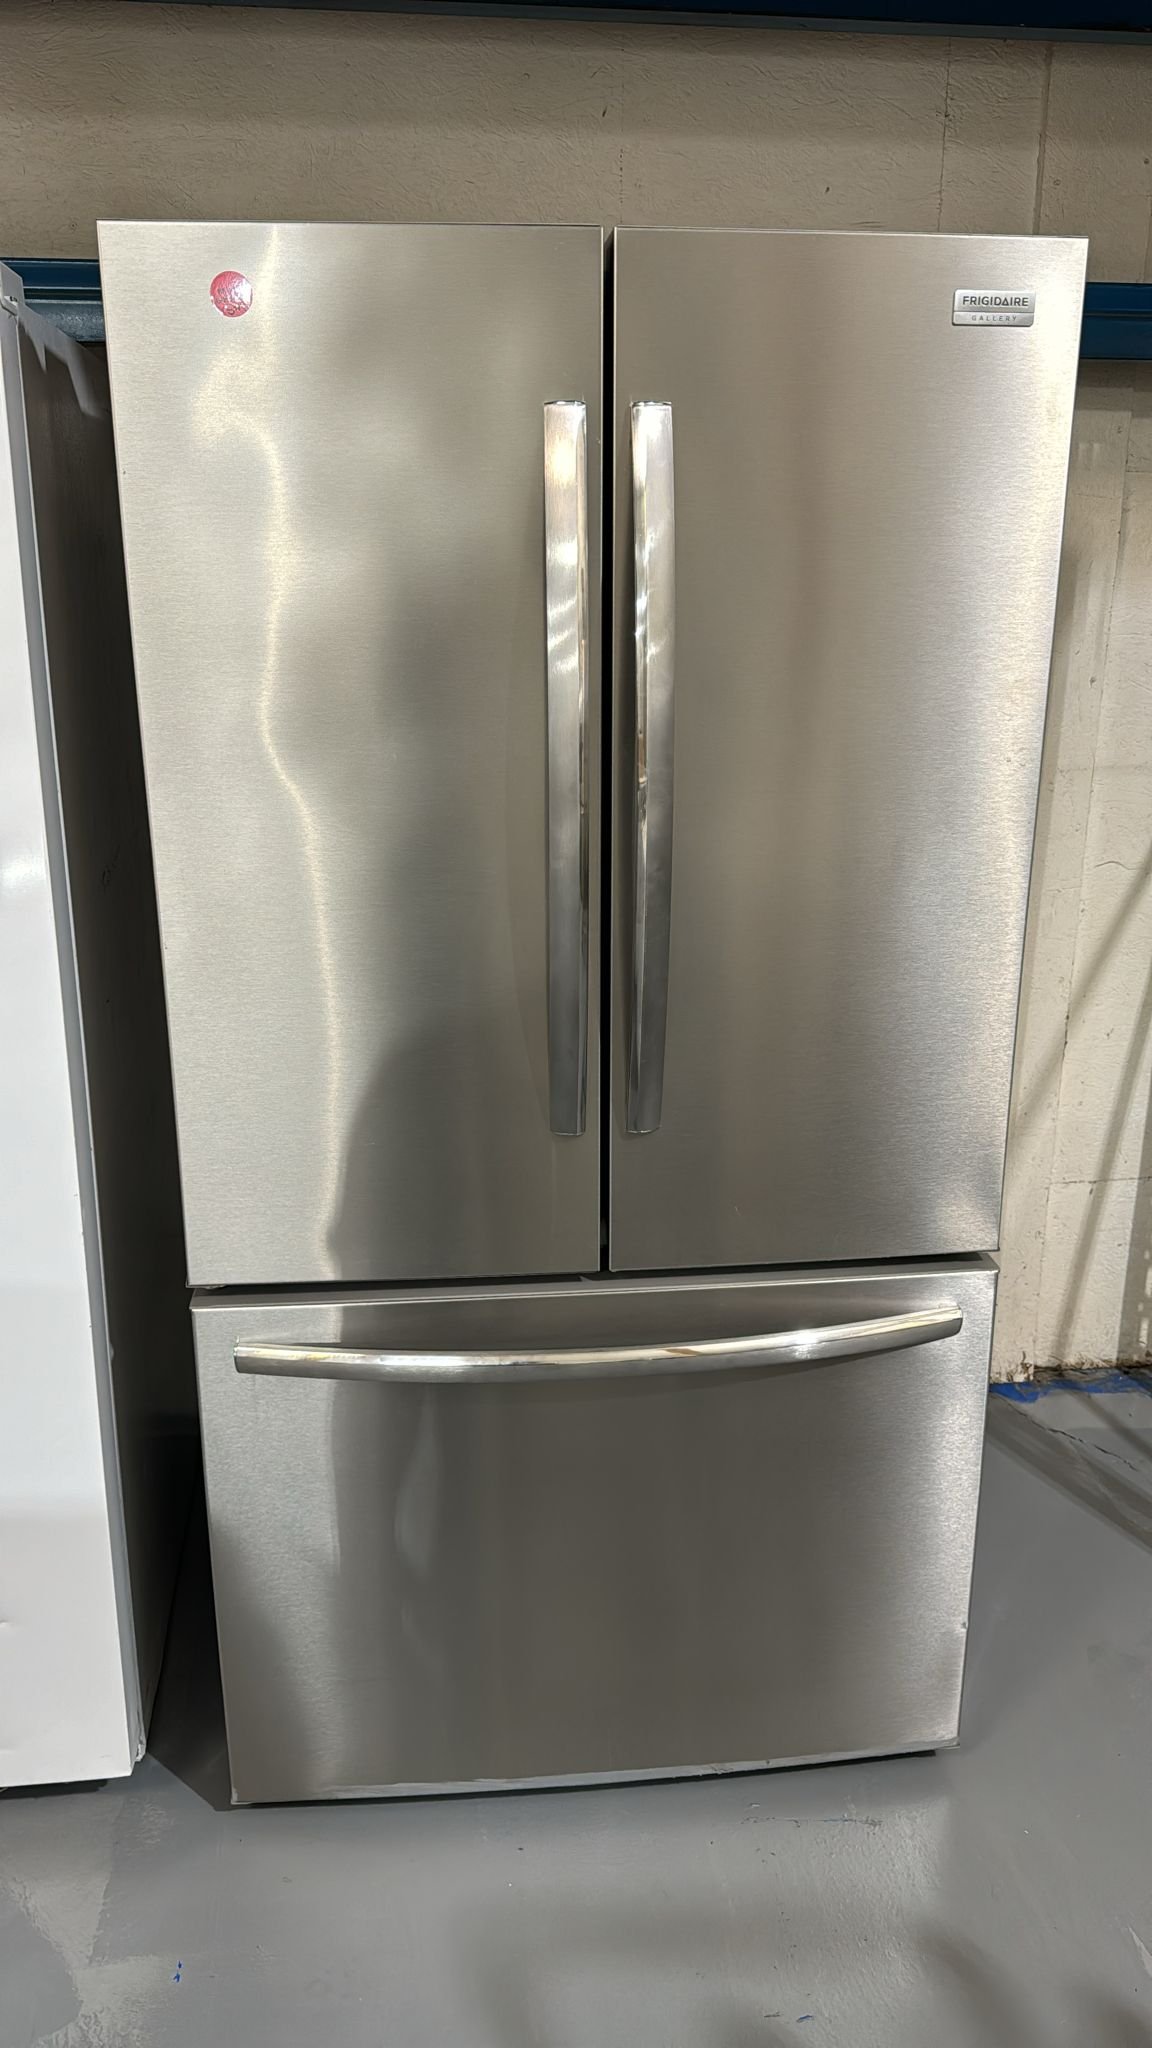 Frigidaire Used 3 Door French Door Refrigerator – Stainless